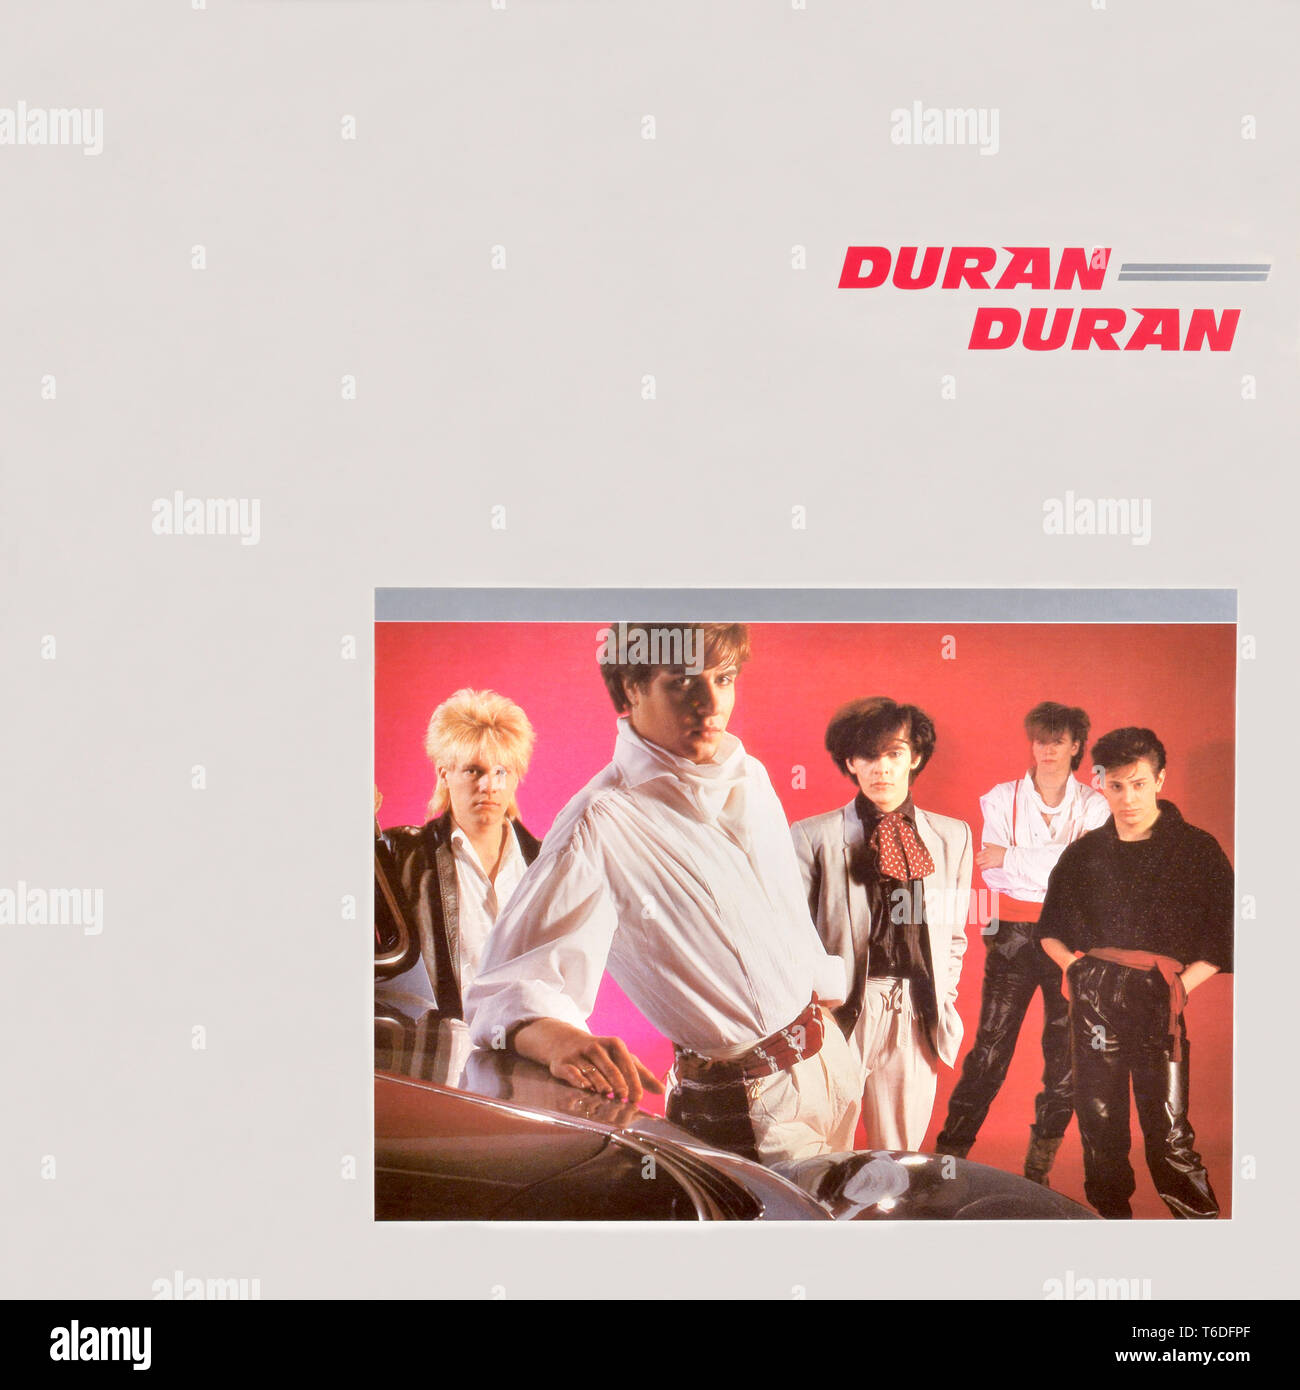 Duran Duran - portada original del álbum de vinilo - Duran Duran - 1981  Fotografía de stock - Alamy